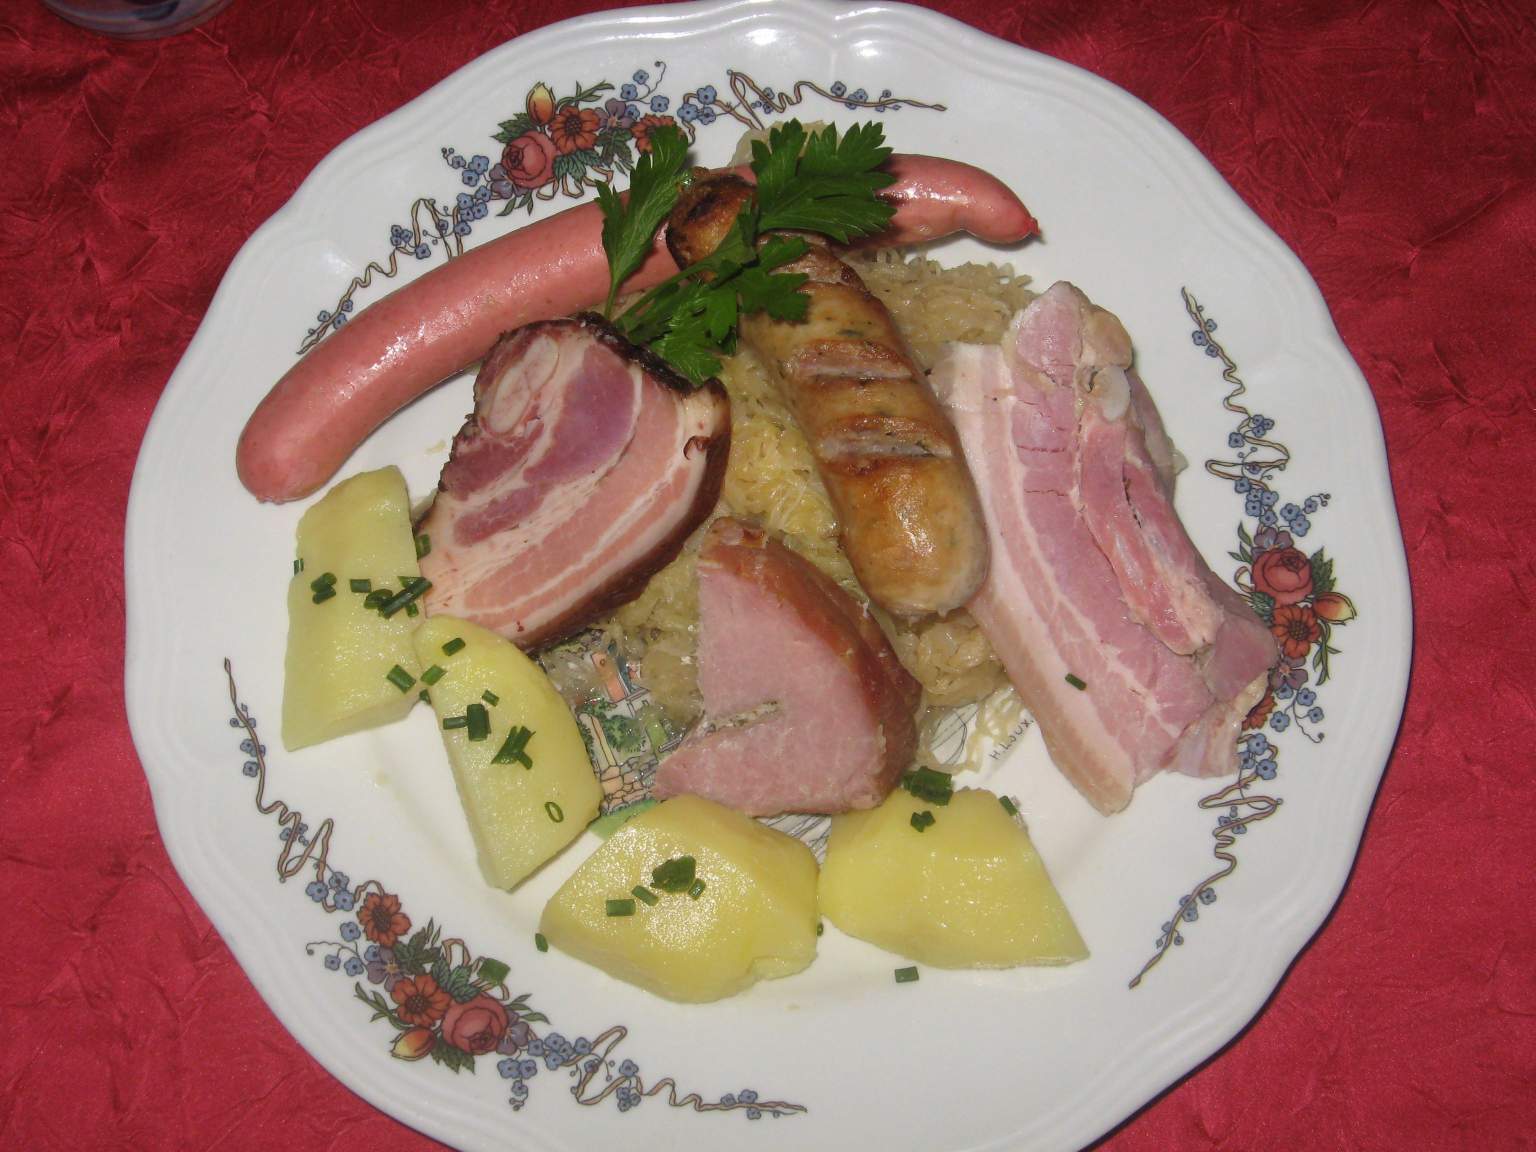 Alsatian sauerkraut from the Hotel La Couronne in Wissembourg